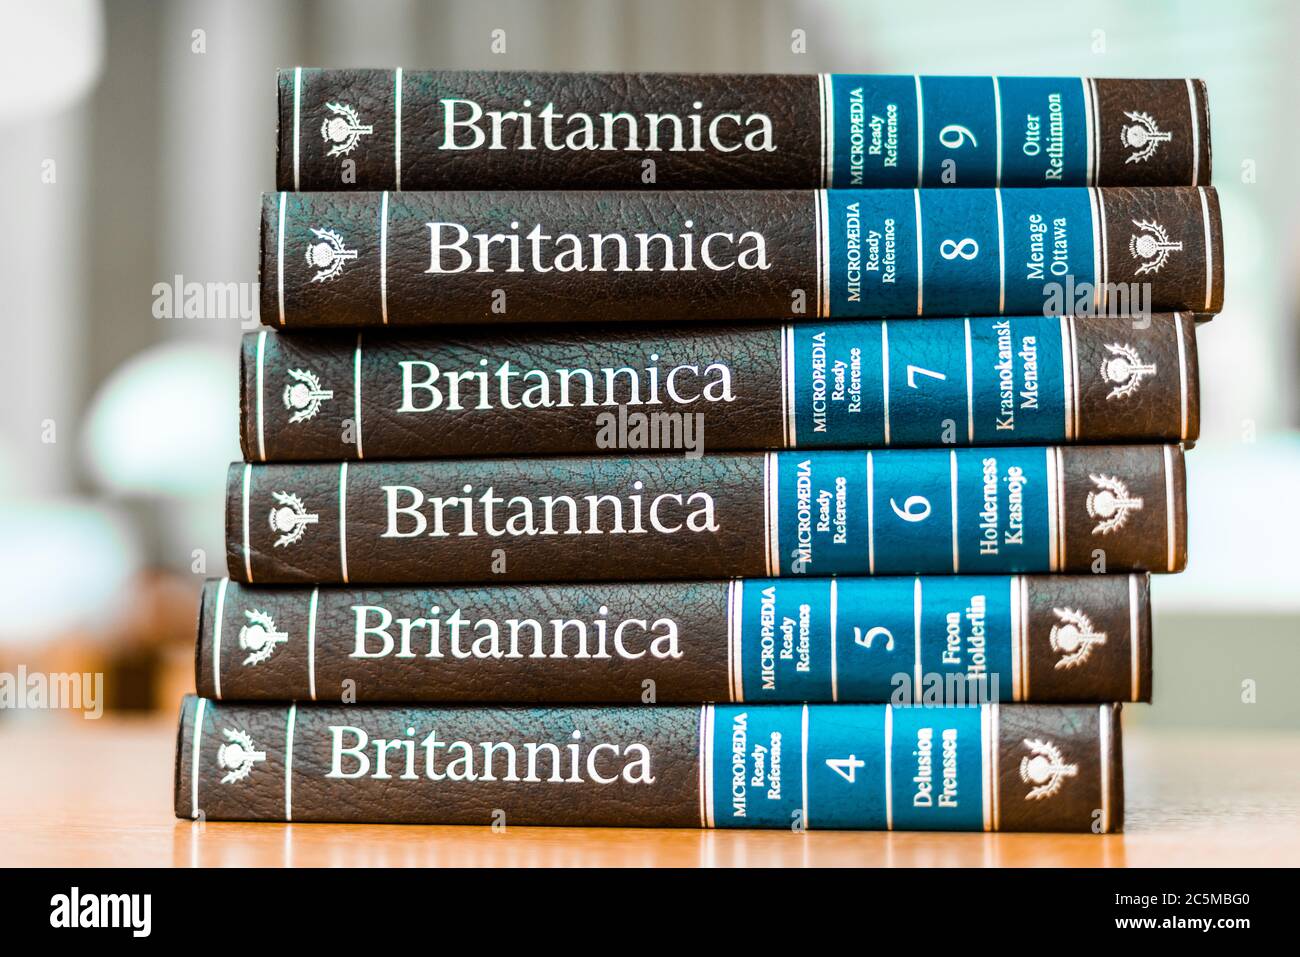 POZNAN, POL - 03 DE FEBRERO de 2020: Enciclopedia Britannica volúmenes en una biblioteca pública Foto de stock